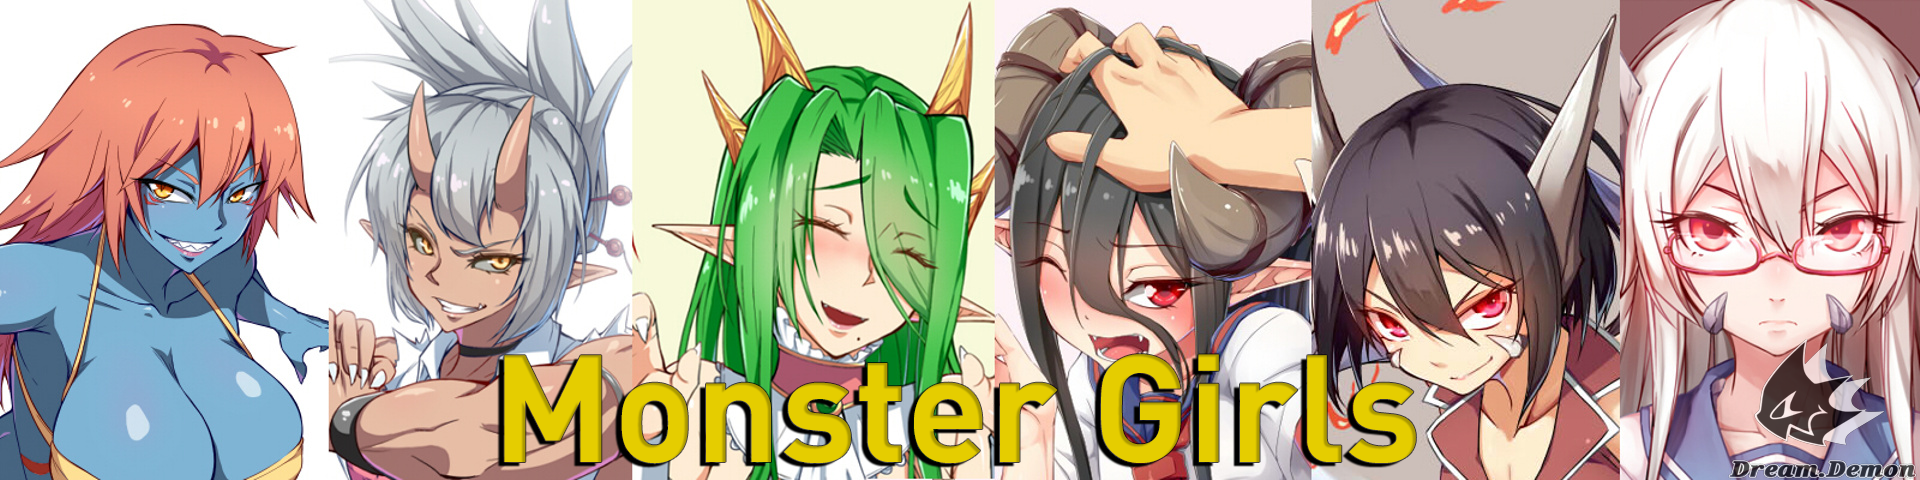 Monster Girl Project 2019-11-23 Mei by dreamdemon